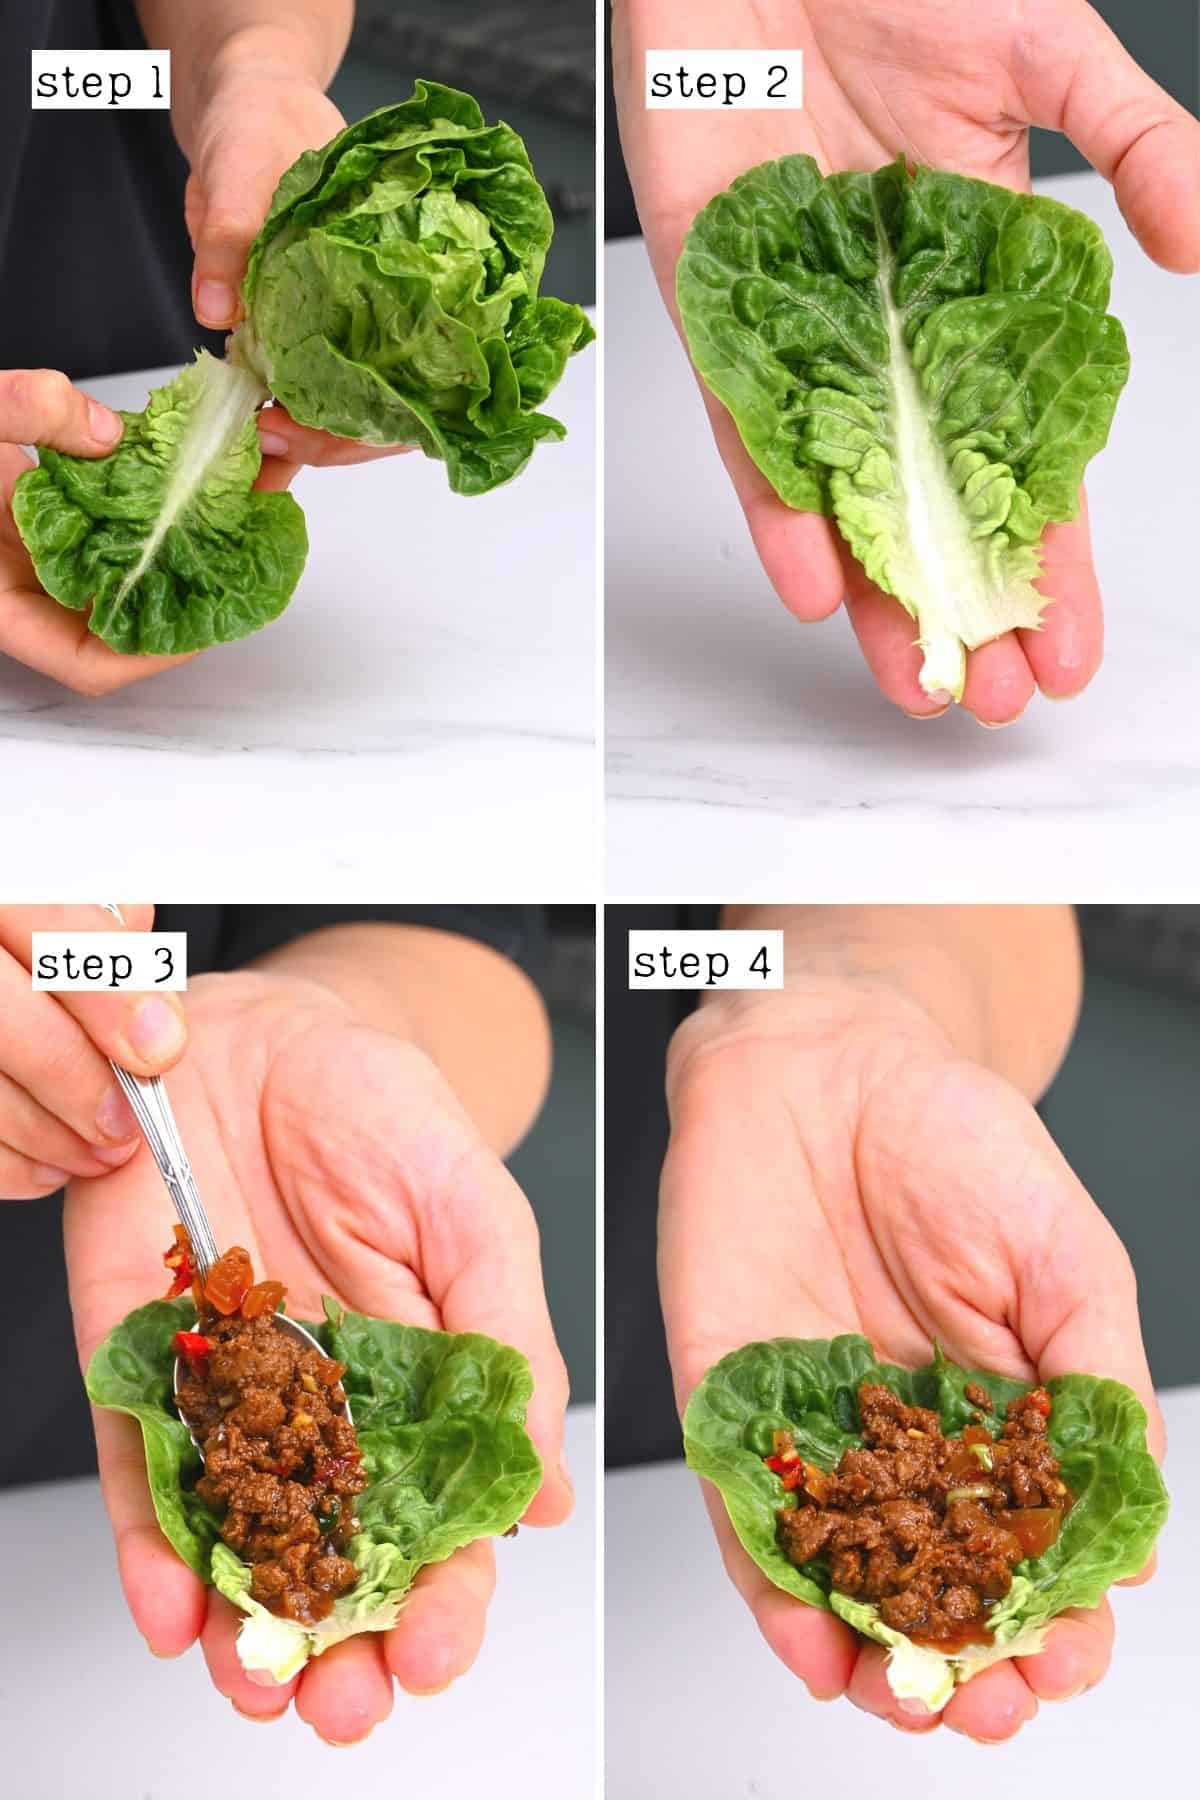 Steps for assembling lettuce wraps